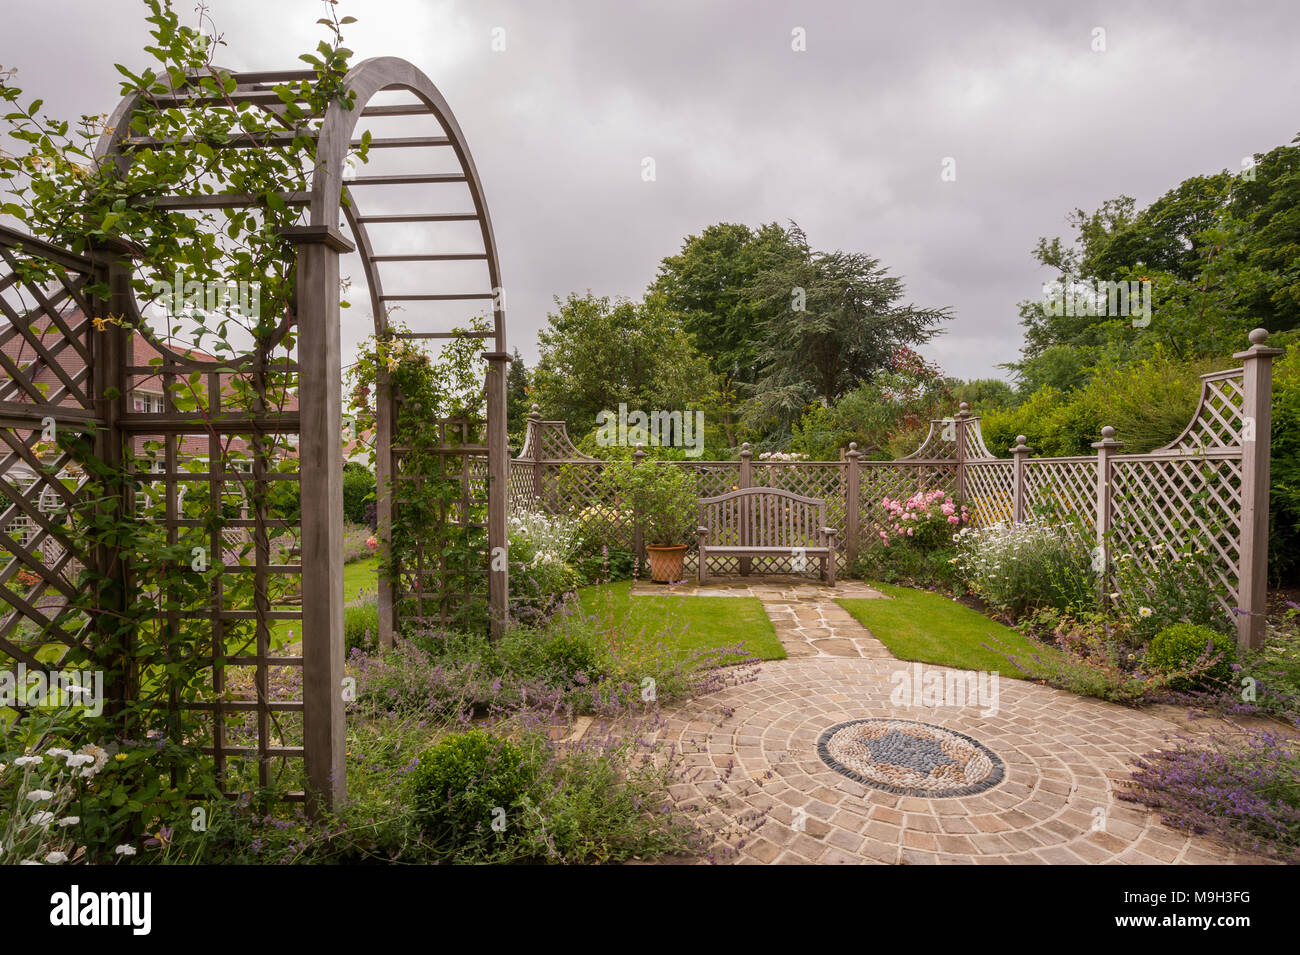 Estate piante, opere d'arte del mosaico, schermata trellis, arbour archway & sedile - bella e tradizionale e paesaggistici, progettato giardino - Yorkshire, Inghilterra, Regno Unito. Foto Stock